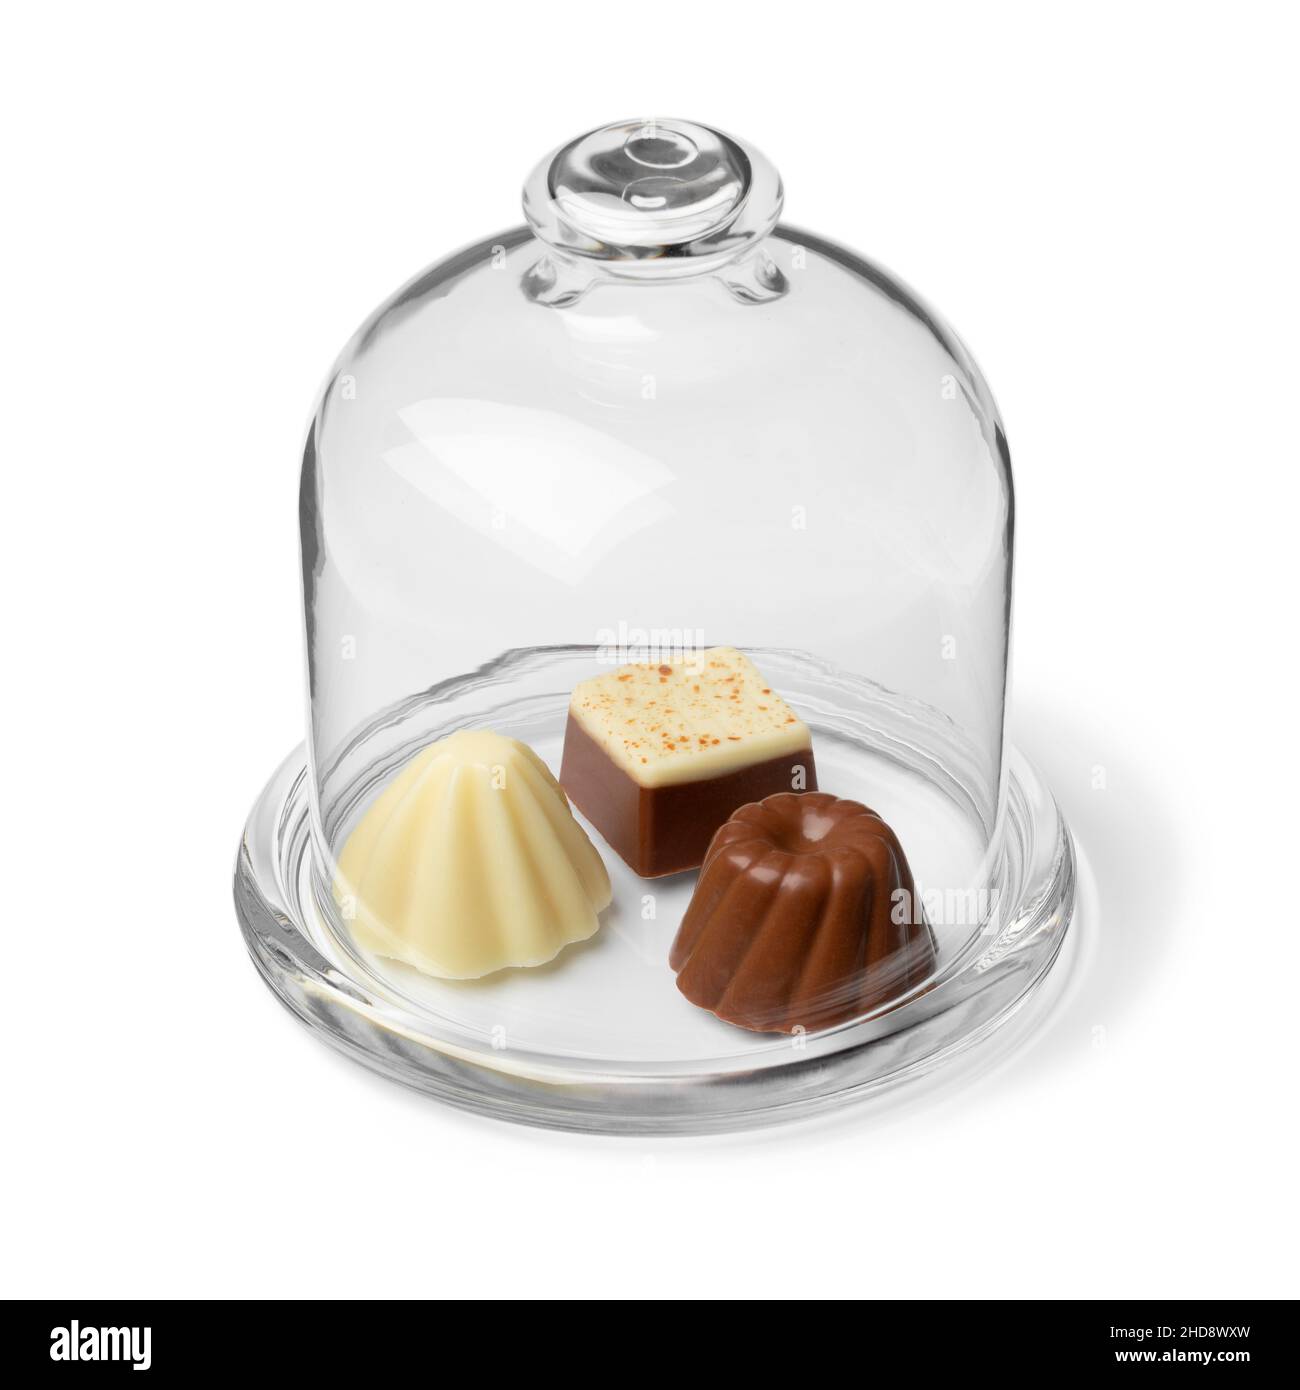 Des variations de bonbons au chocolat dans un pot en verre sont affichées en gros plan Banque D'Images